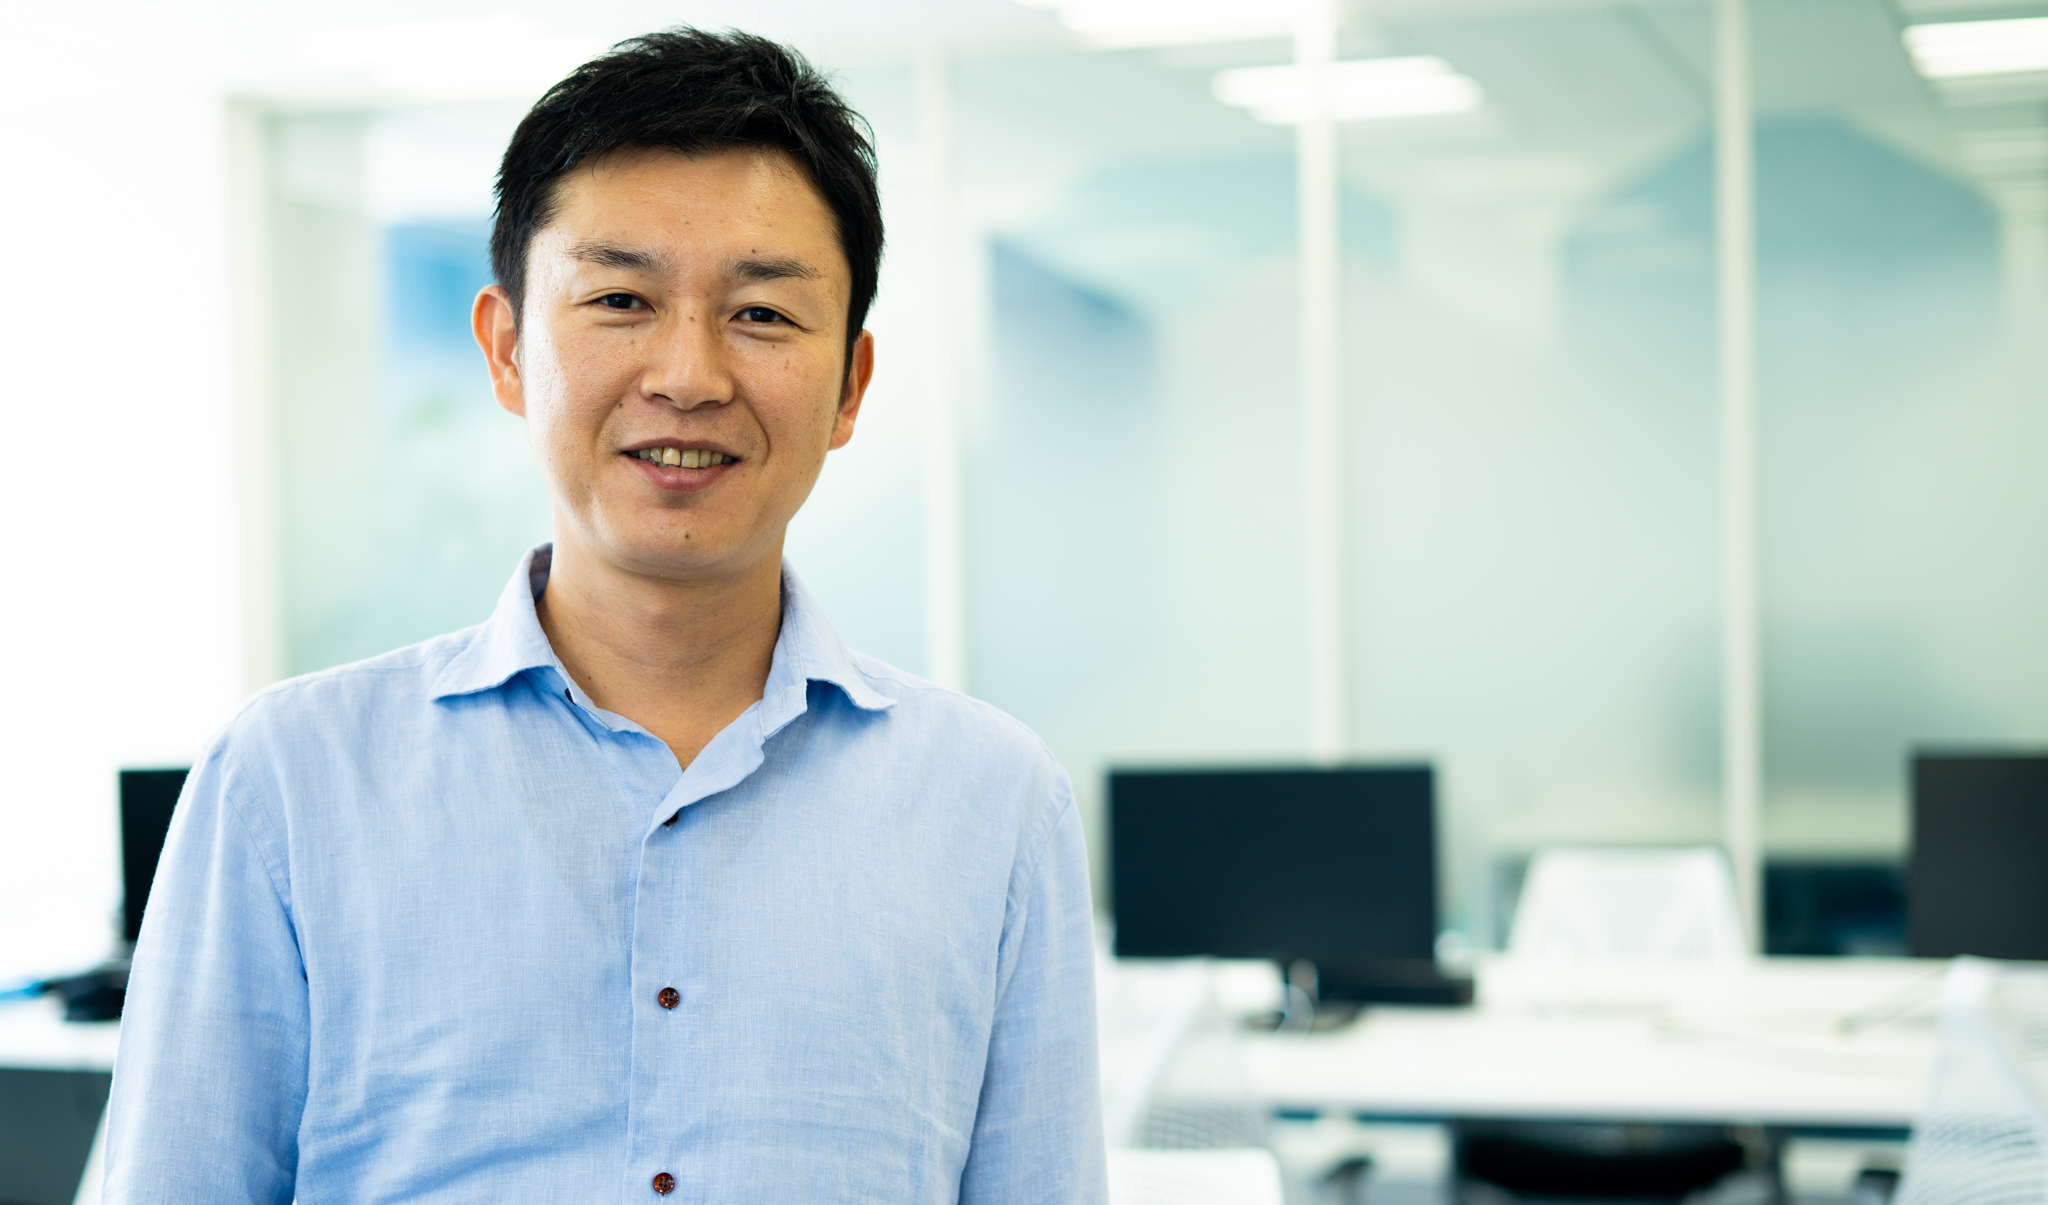 代表取締役社長　鈴木 伸明 氏
ベルリッツ・ジャパンに在籍していたが、2012年7月にビズメイツを創業。